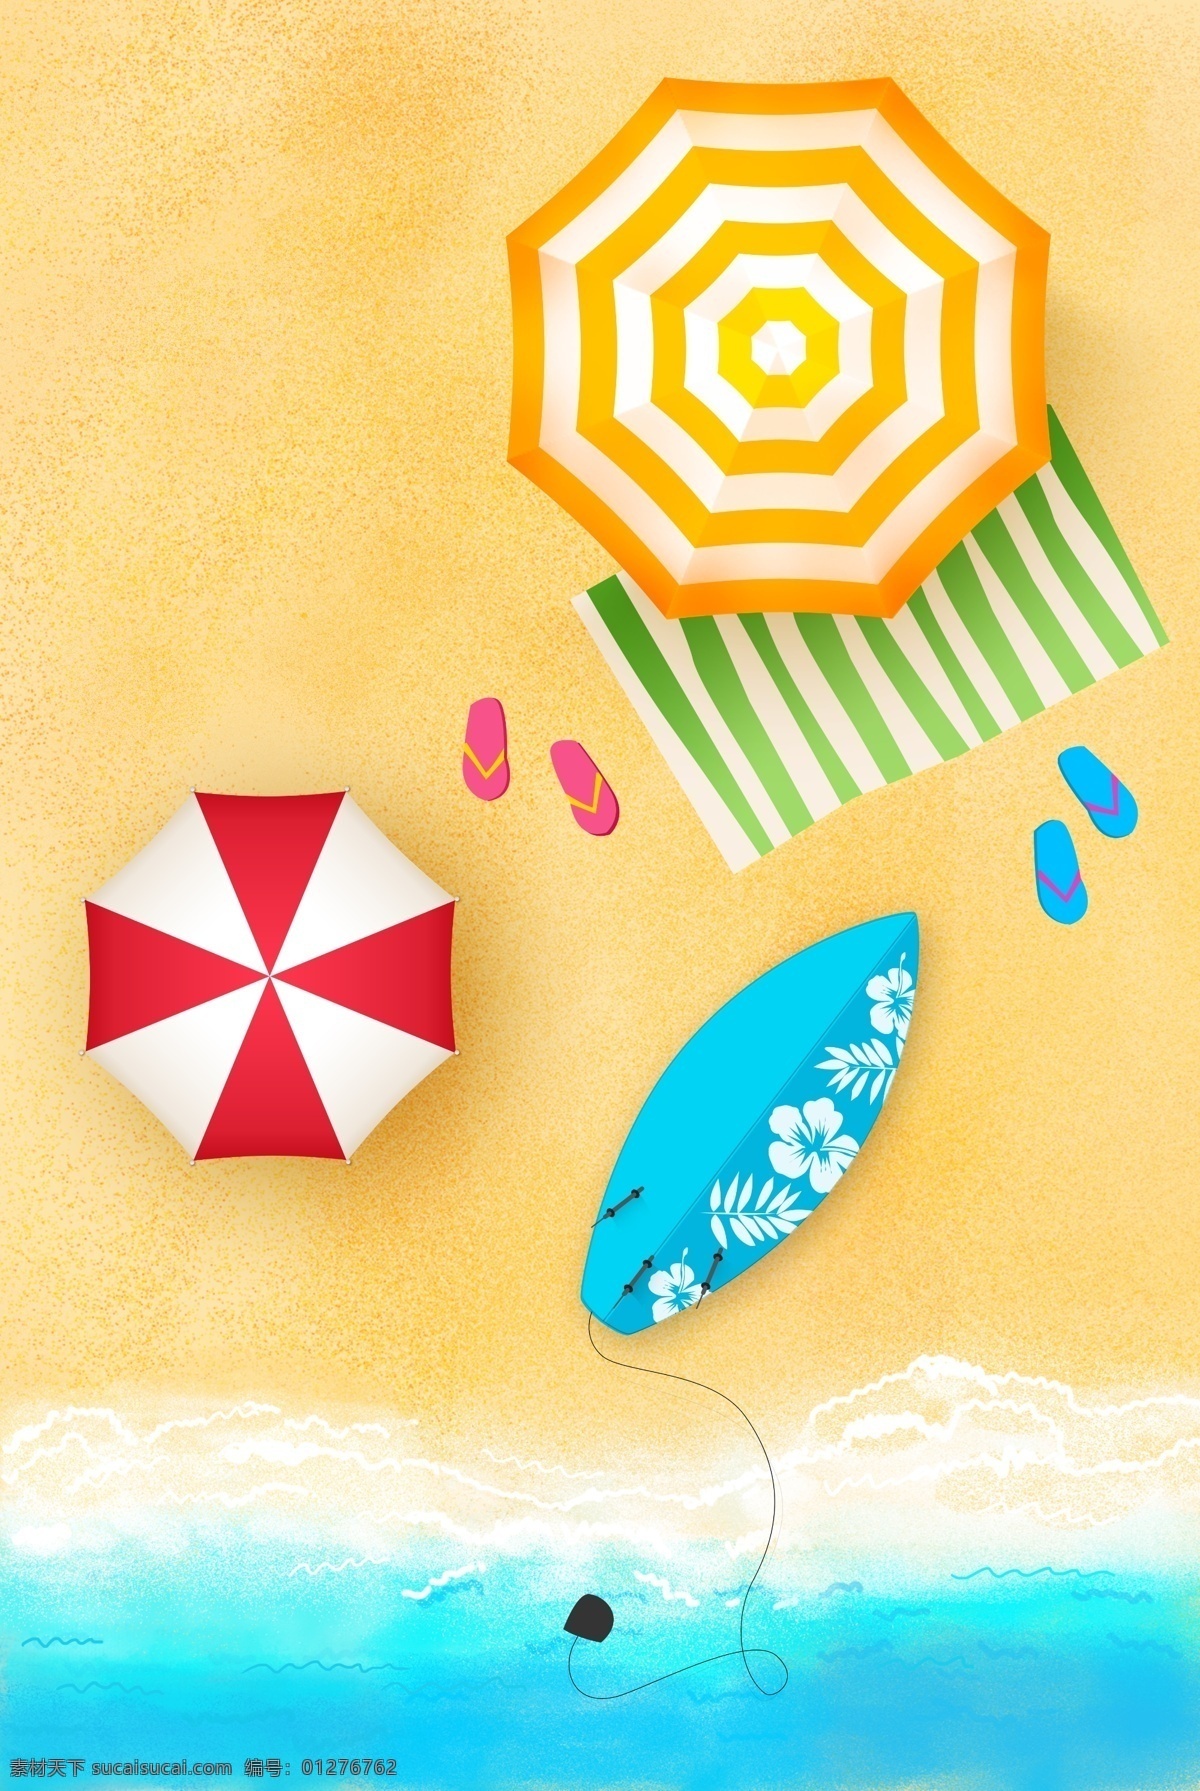 夏季 夏日 沙滩 海岸 太阳伞 清新 背景 分层 背景素材